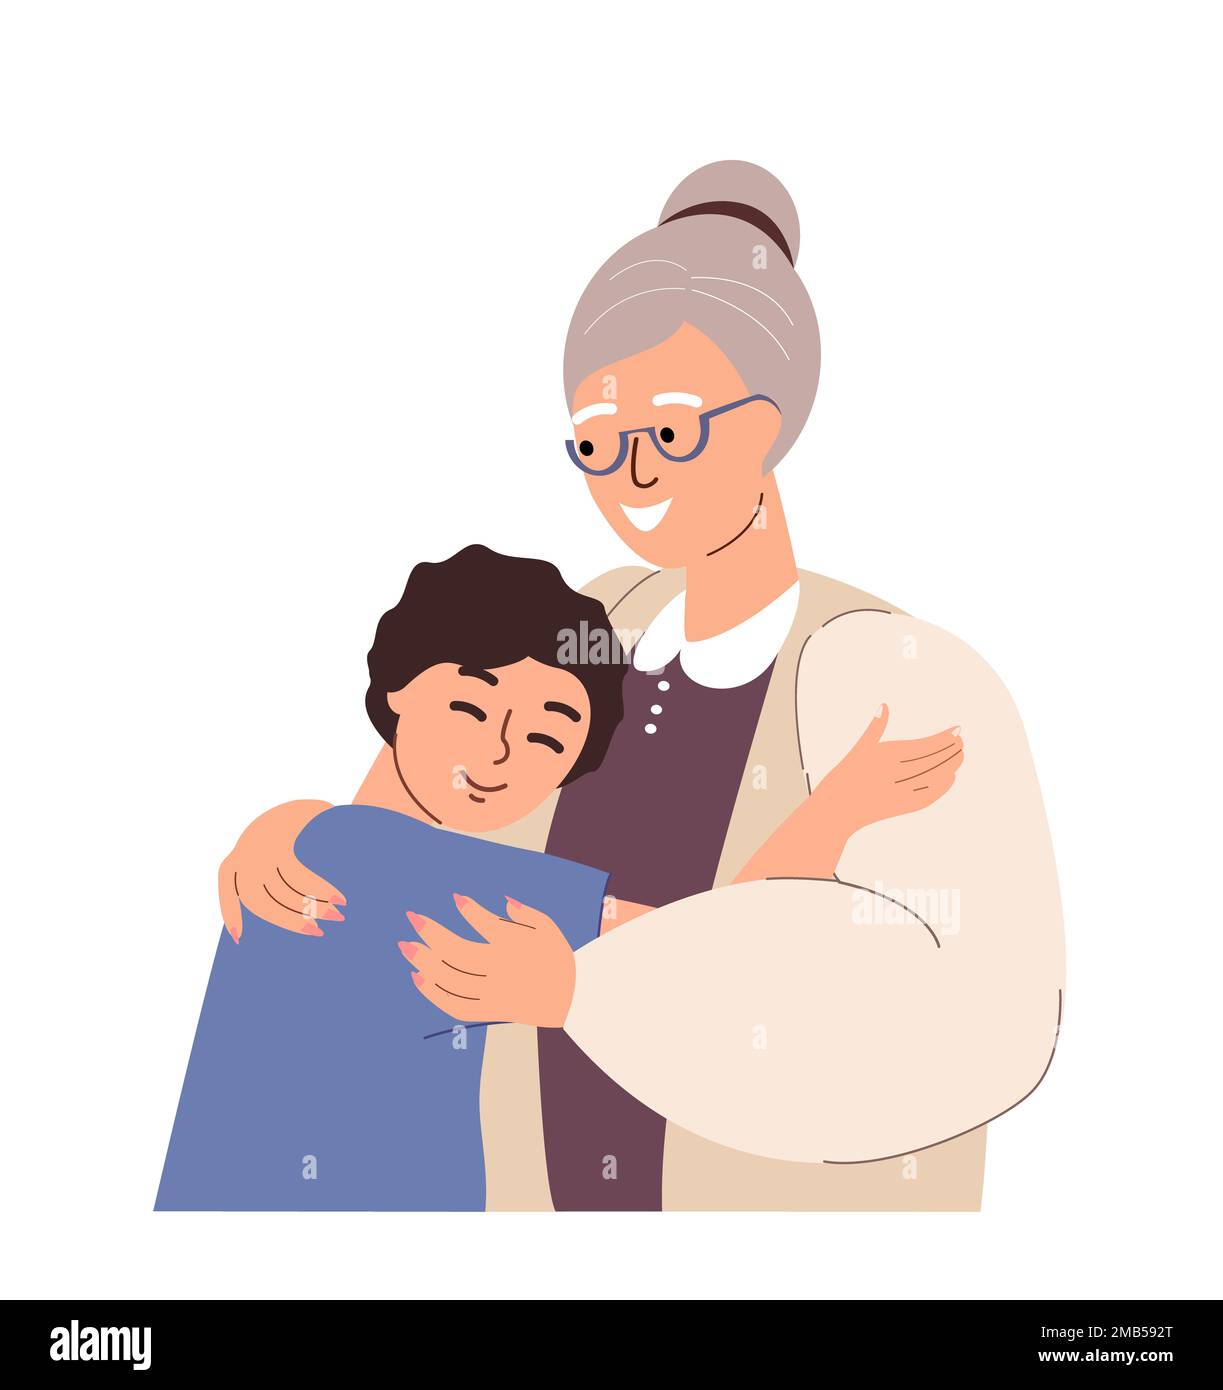 Großmutter und Junge umarmen sich zusammen.Liebe von Großmutter und Enkelkind.Ältere Frau unterstützt Enkelsohn. Frohe Oma und Kind, warme Umarmungen. Flacher Vektor Stockfoto